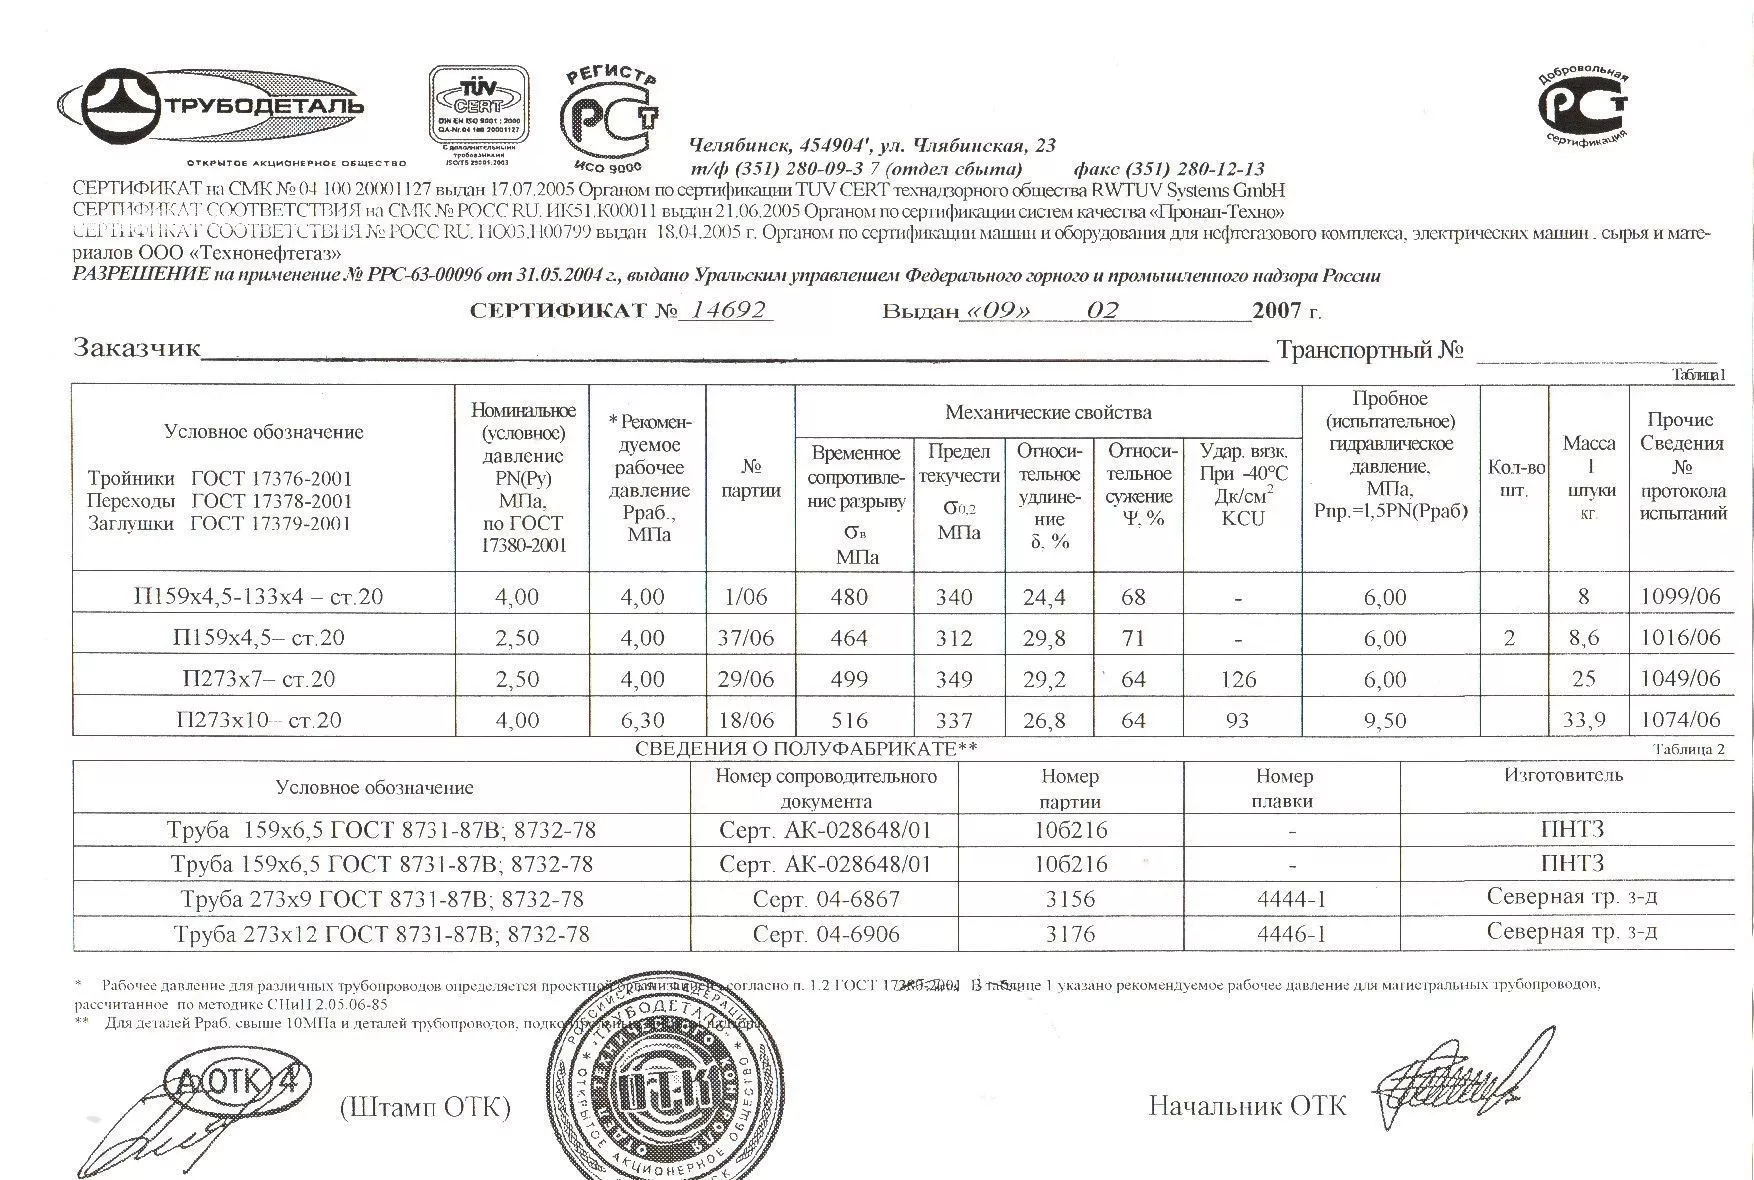 Сертификат на тройники П273х10 от 02-07